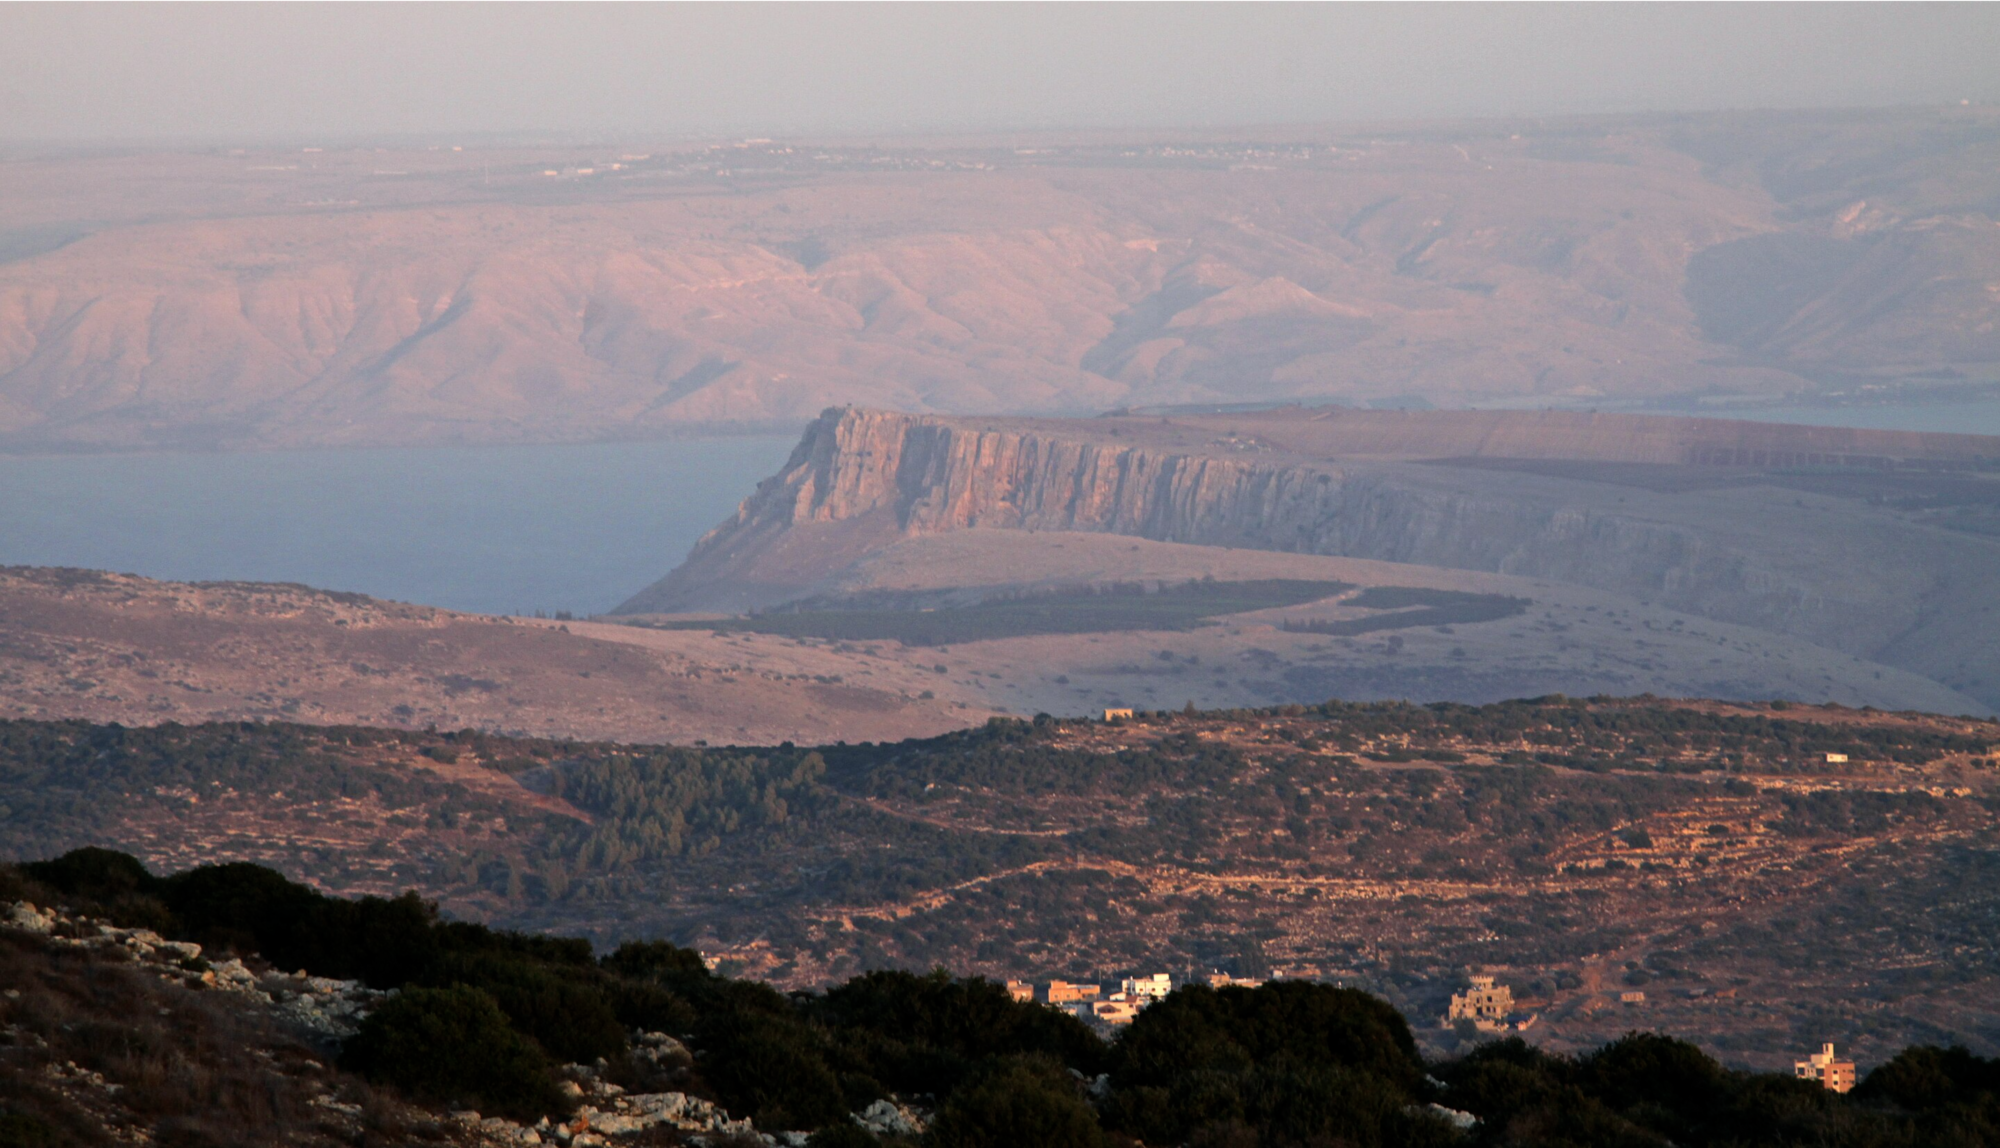 Widok na górę Arbel widzianą z Hararit w Izraelu. (październik 2011) Za górą Arbel widać Morze Galilejskie i Wzgórza Golan, fot. By Yuvalr - Own work, CC BY-SA 3.0, https://commons.wikimedia.org/w/index.php?curid=18552876